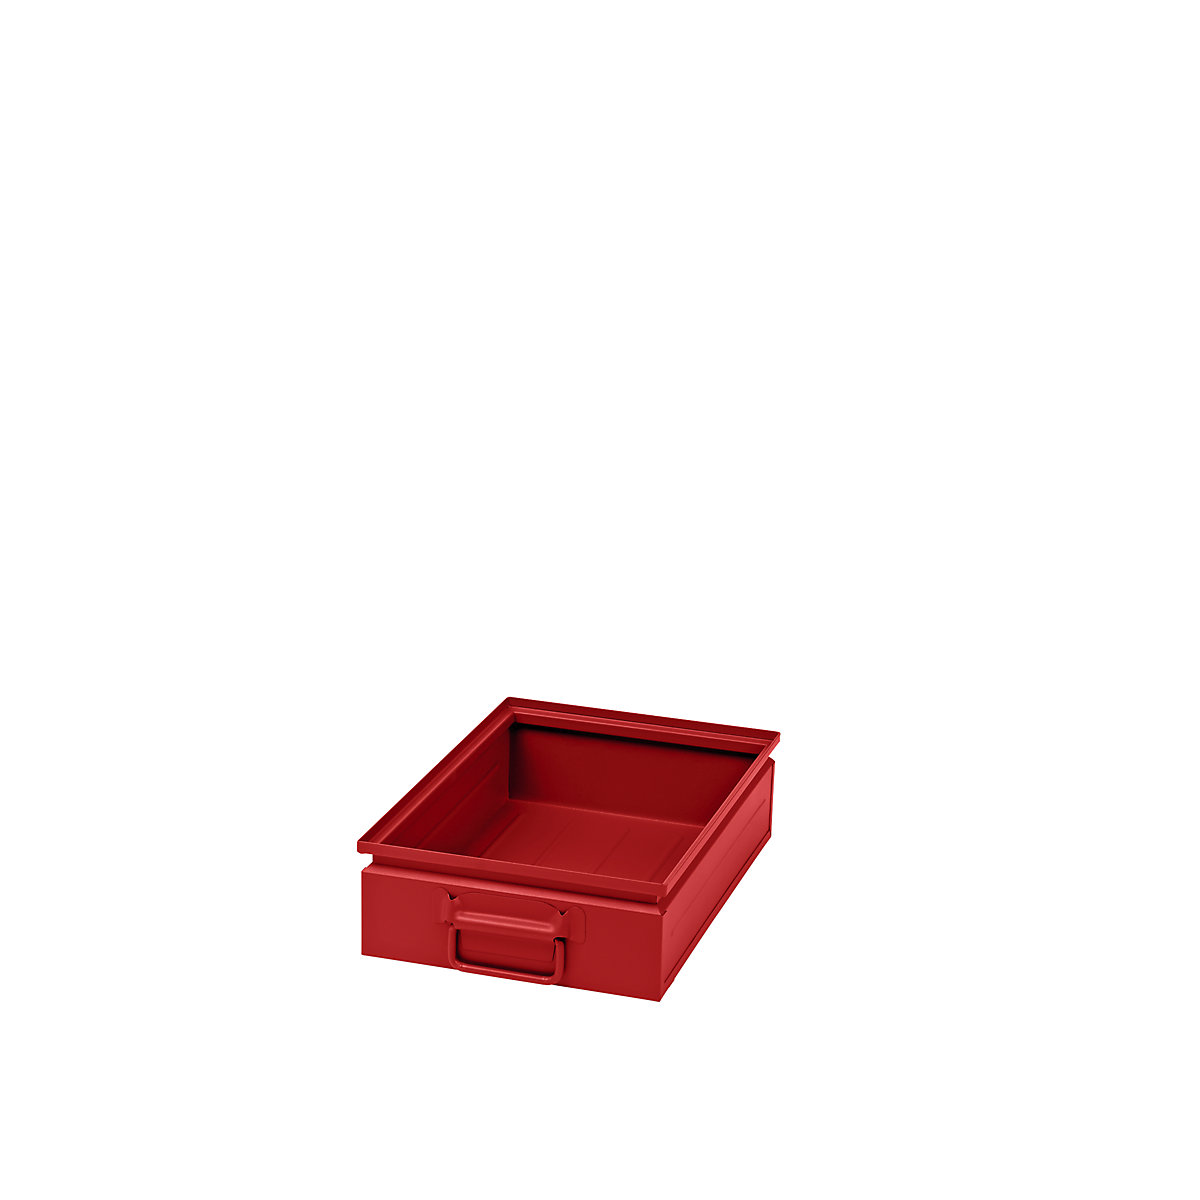 Caja apilable de chapa de acero, capacidad aprox. 15 l, rojo vivo RAL 3000-3